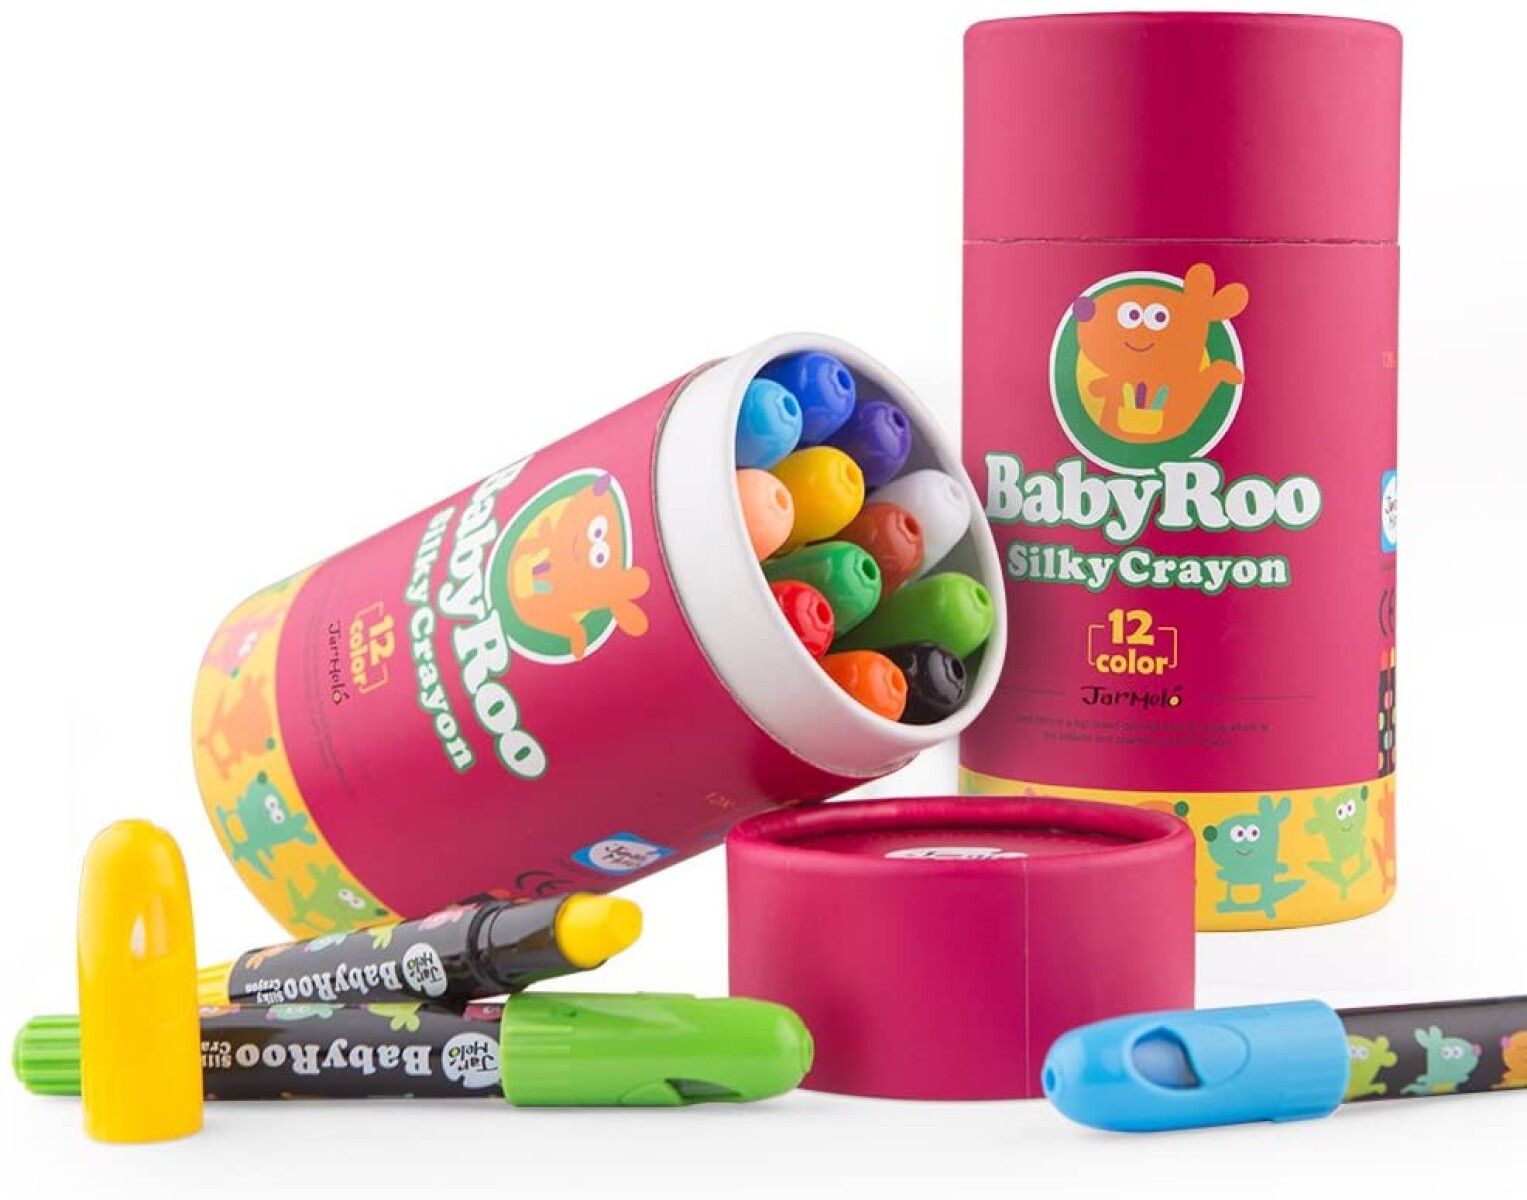 Crayolas Baby Boo Silky Crayons 12 Colores Lavables - 001 